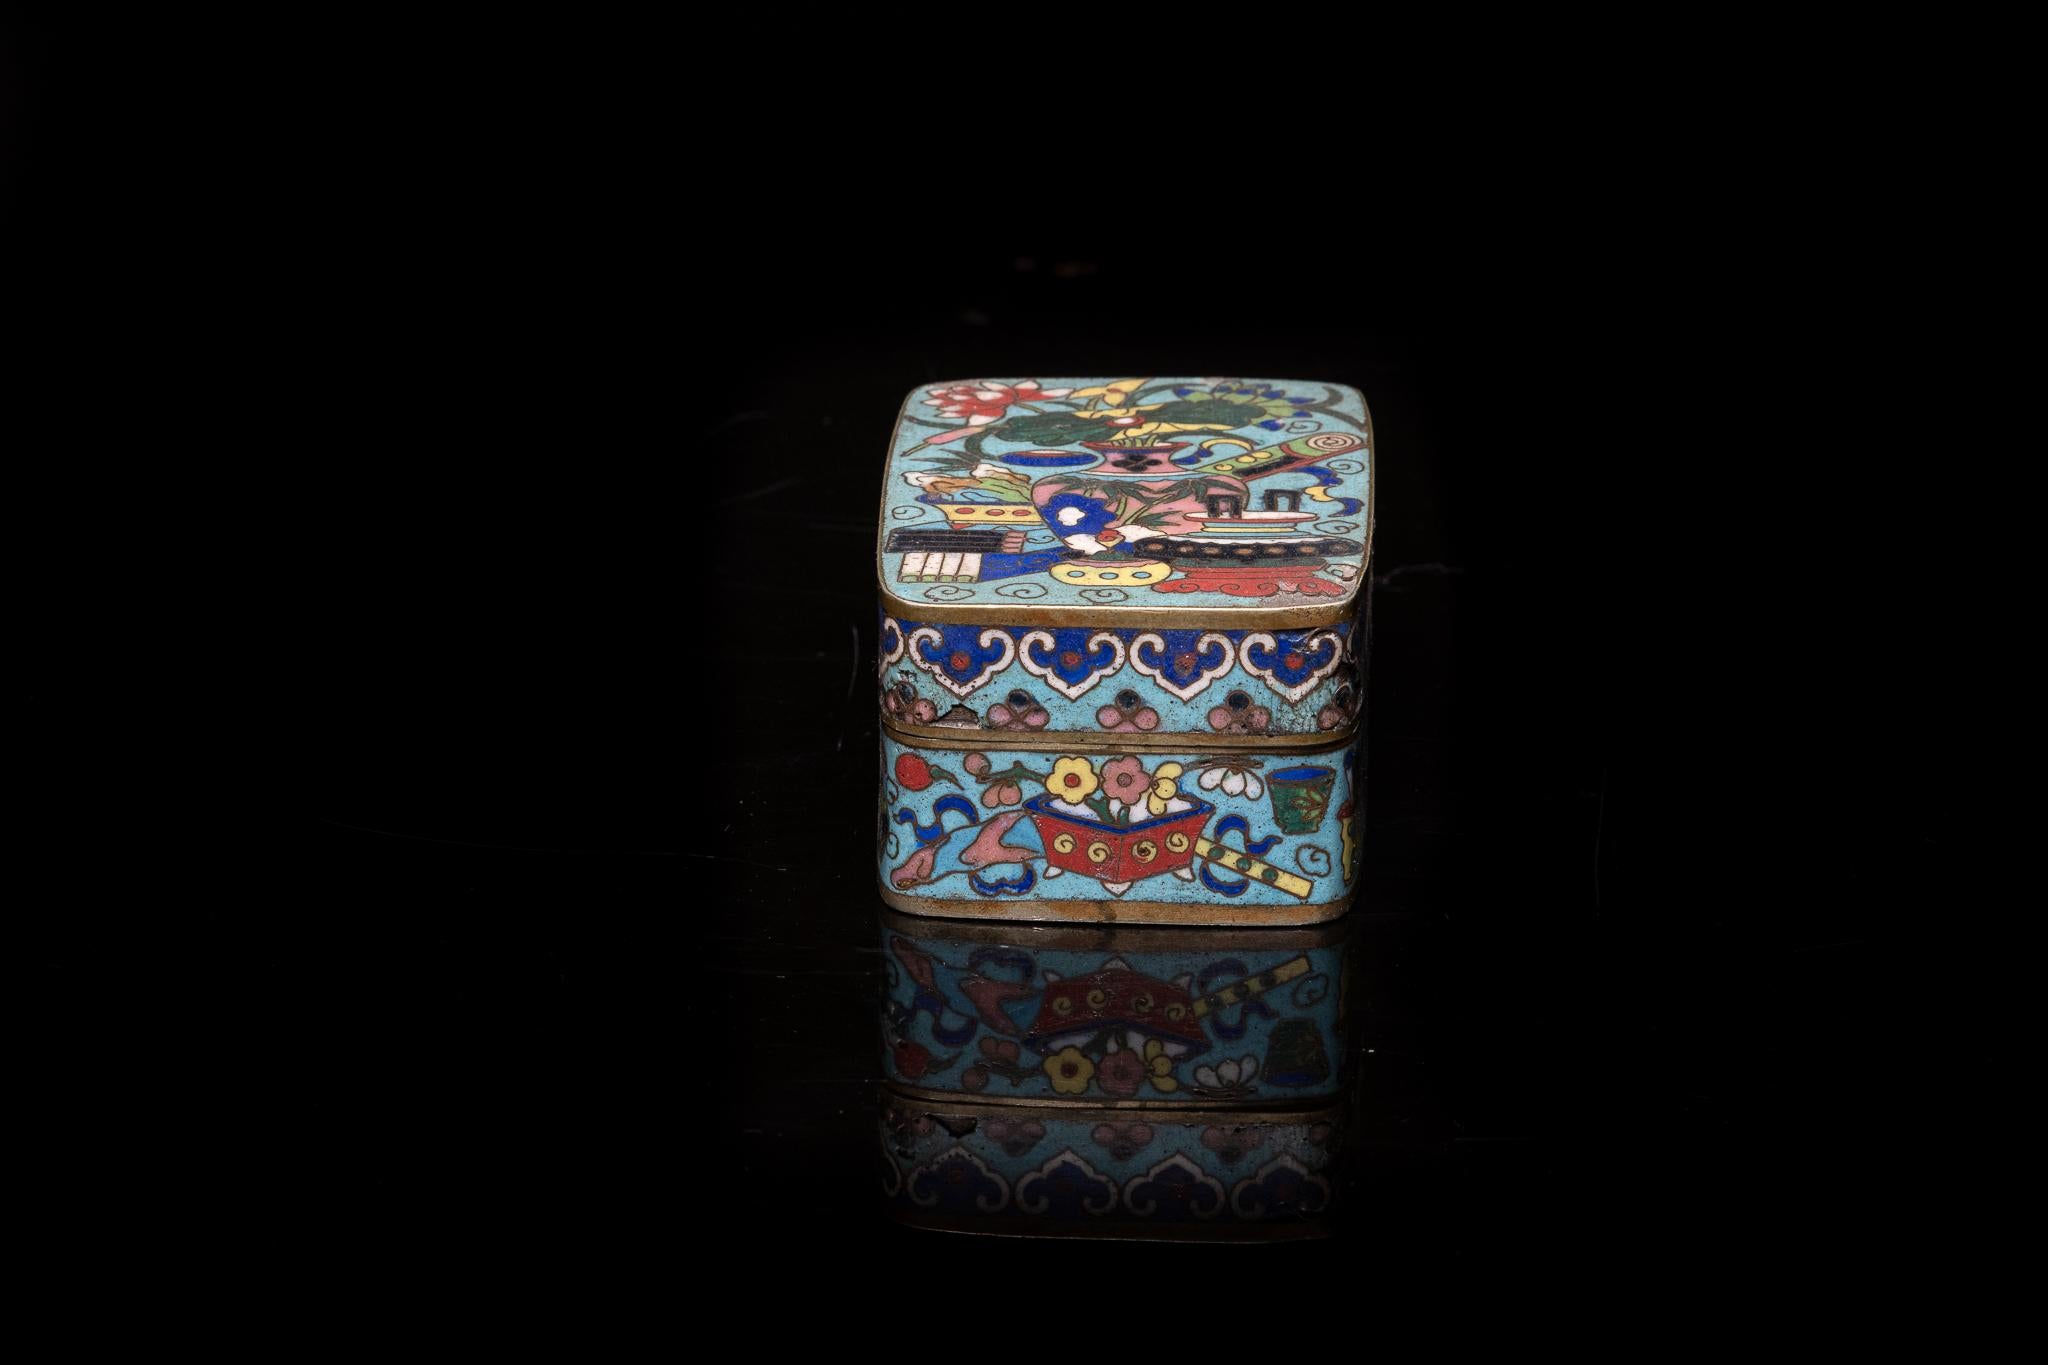 Ancienne boîte à opium chinoise en émail cloisonné, décorée de vases et de fleurs.

Collection S S française